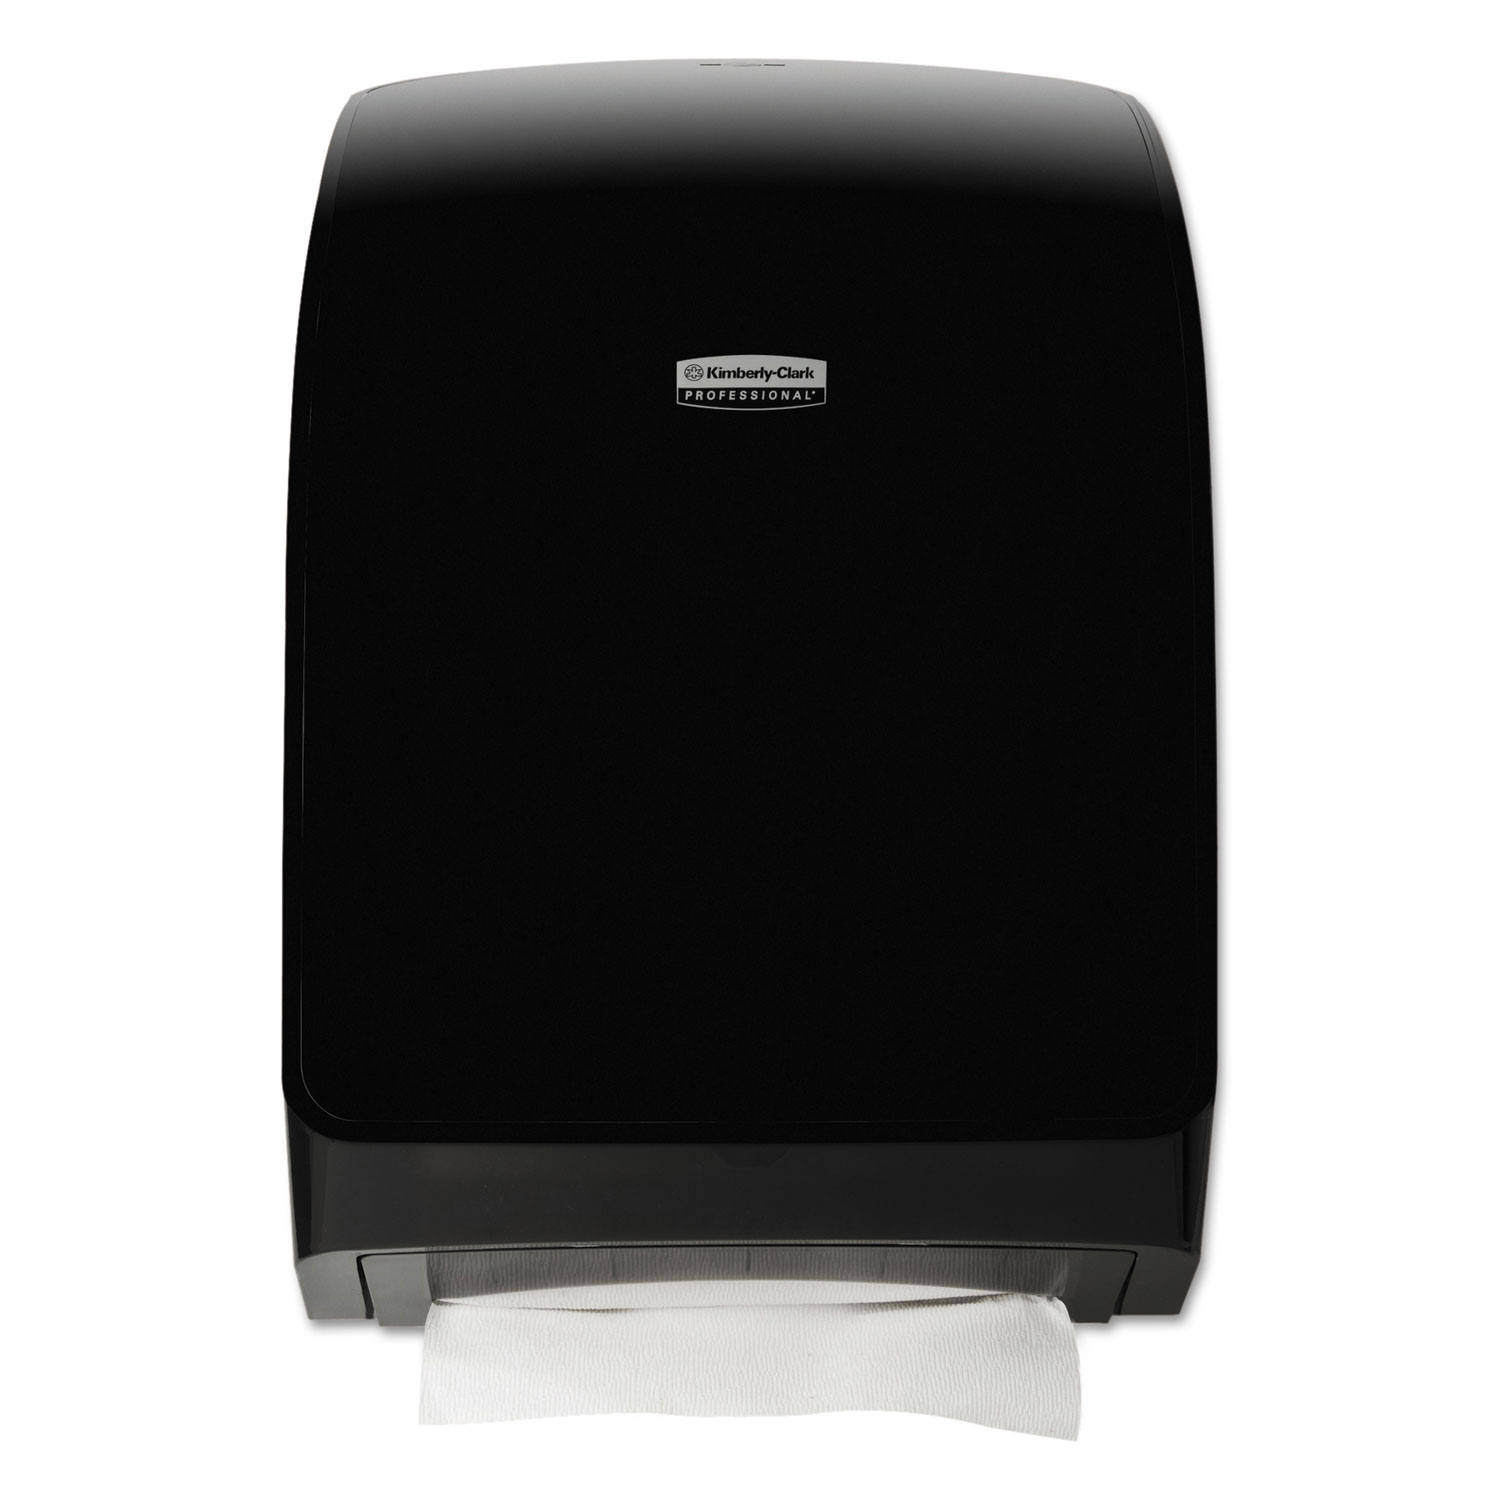  Kimberly-Clark Professional* 39719 Universal Towel Dispenser, 12.699 x 5.525 x 18.806, Black (KCC39719) 